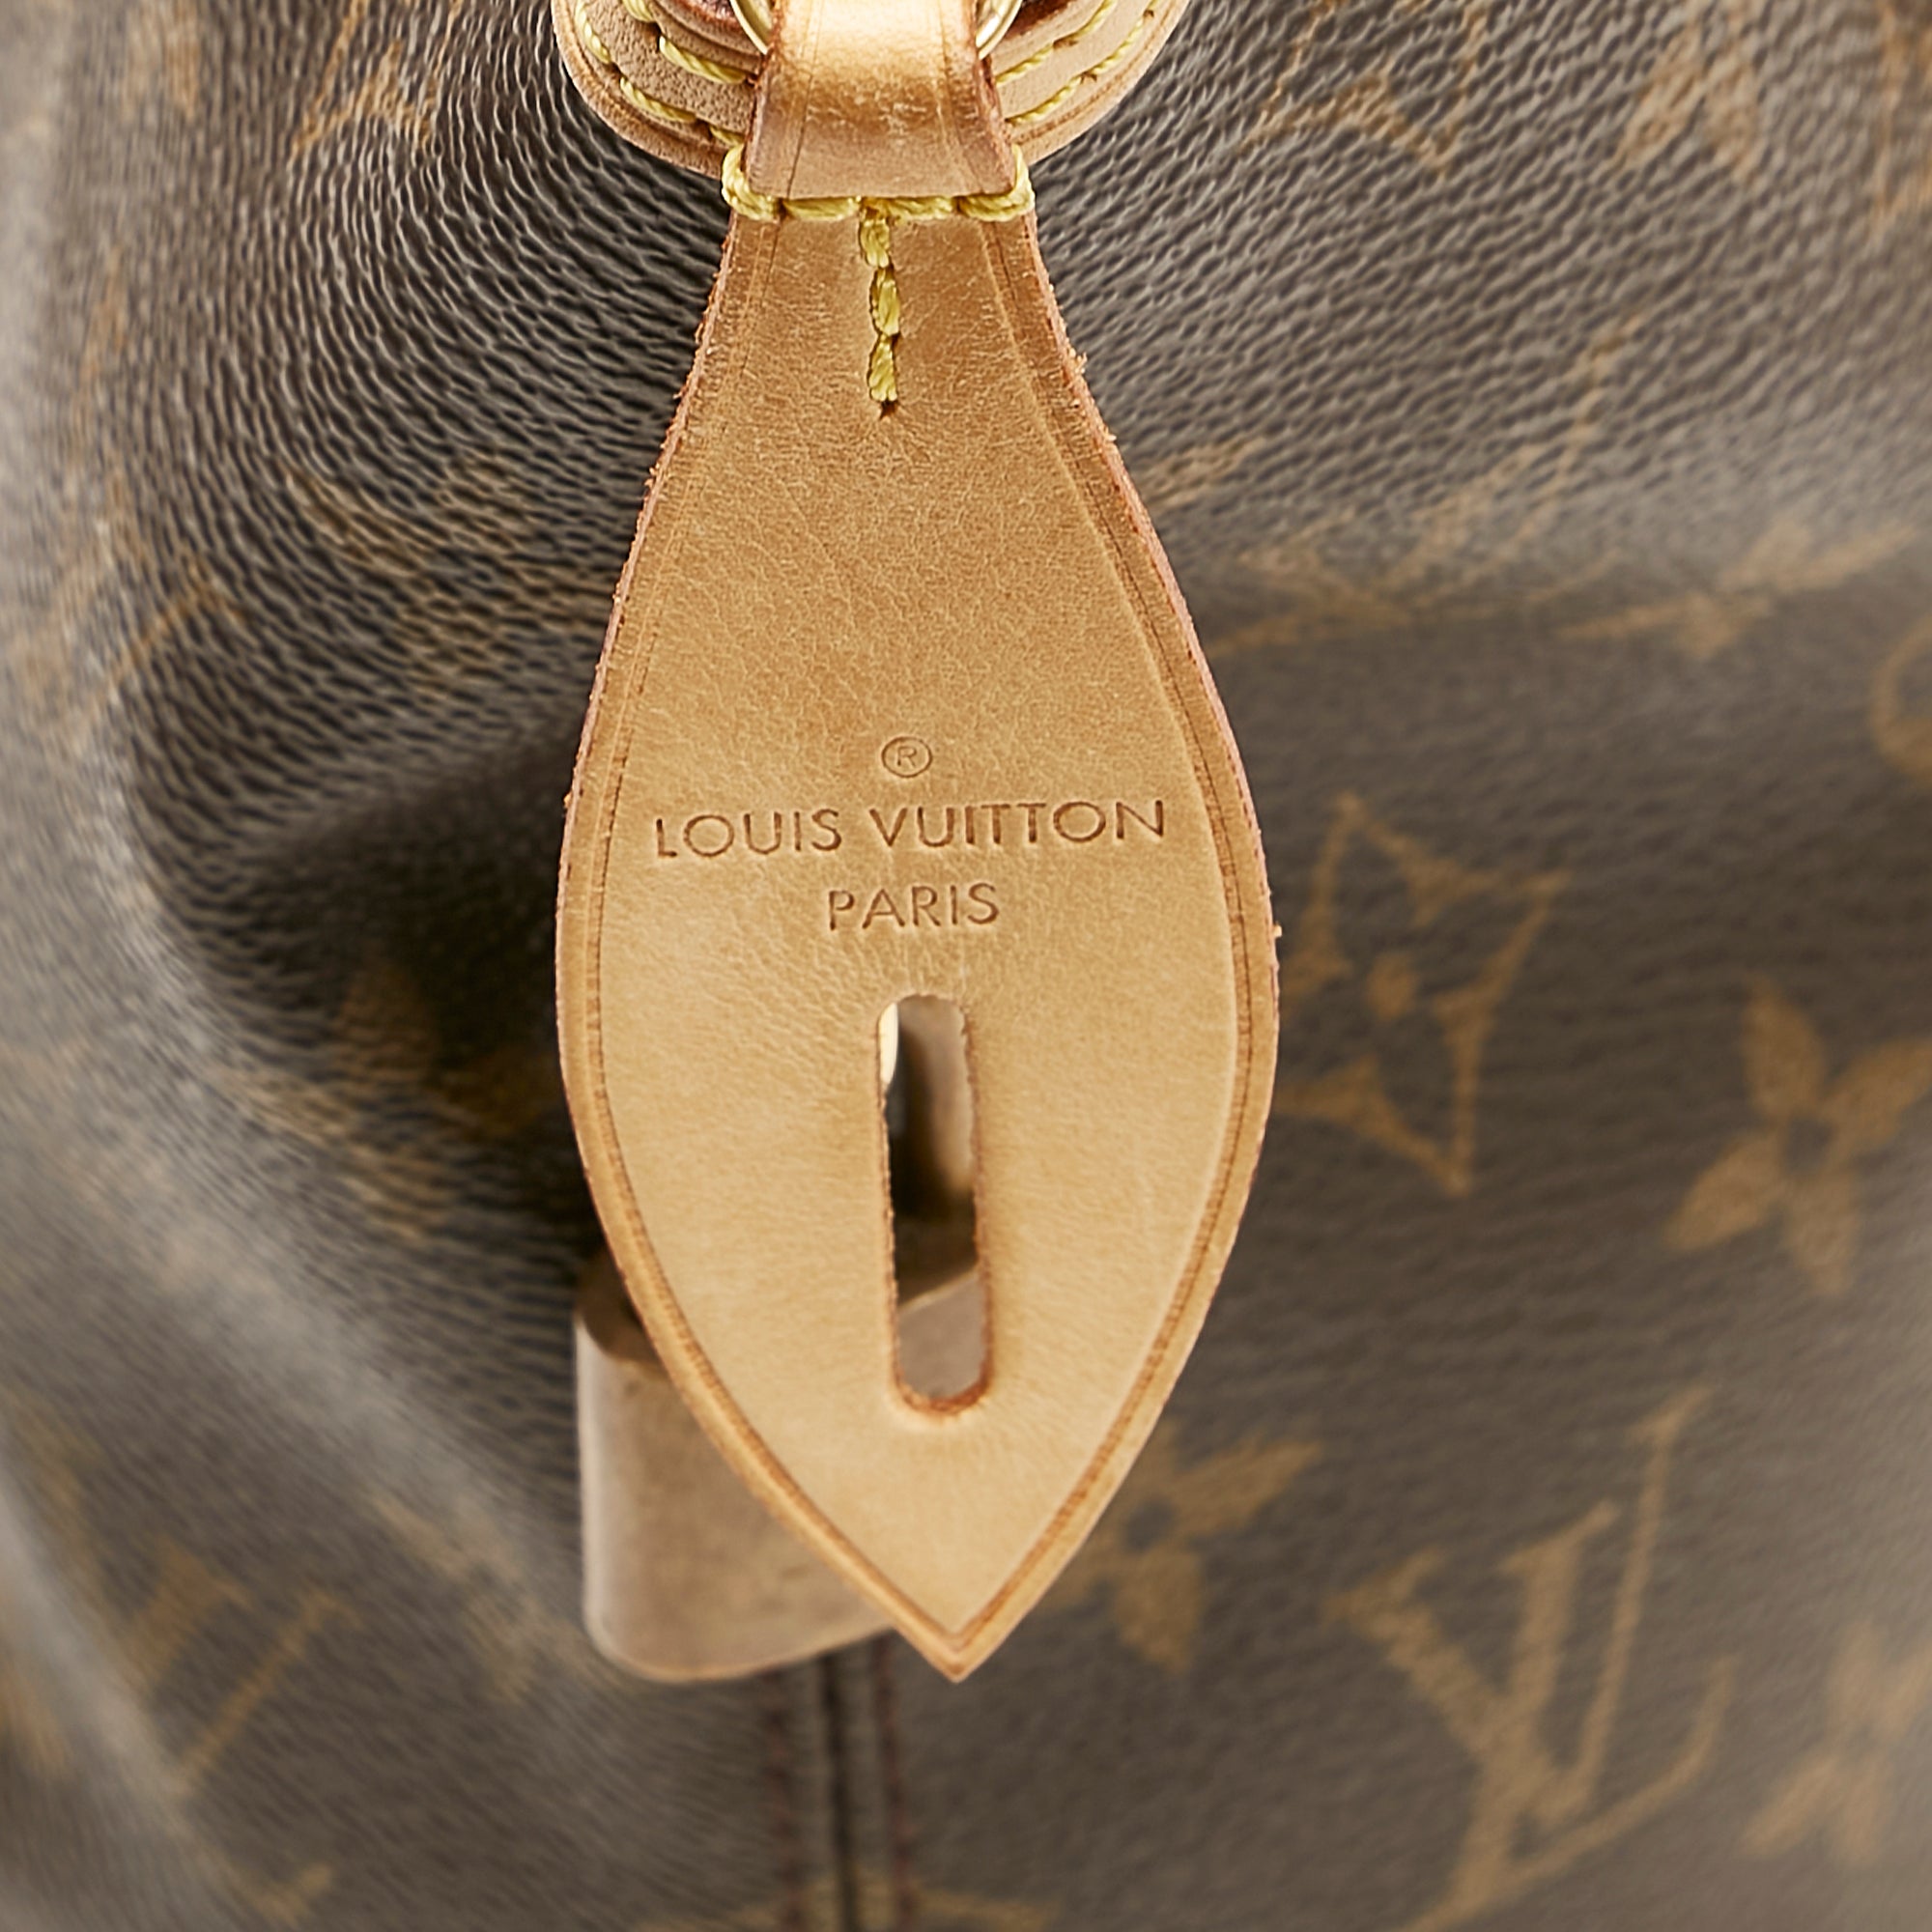 Louis Vuitton Brown Monogram Canvas Leather Lockit Vertical Satchel Bag